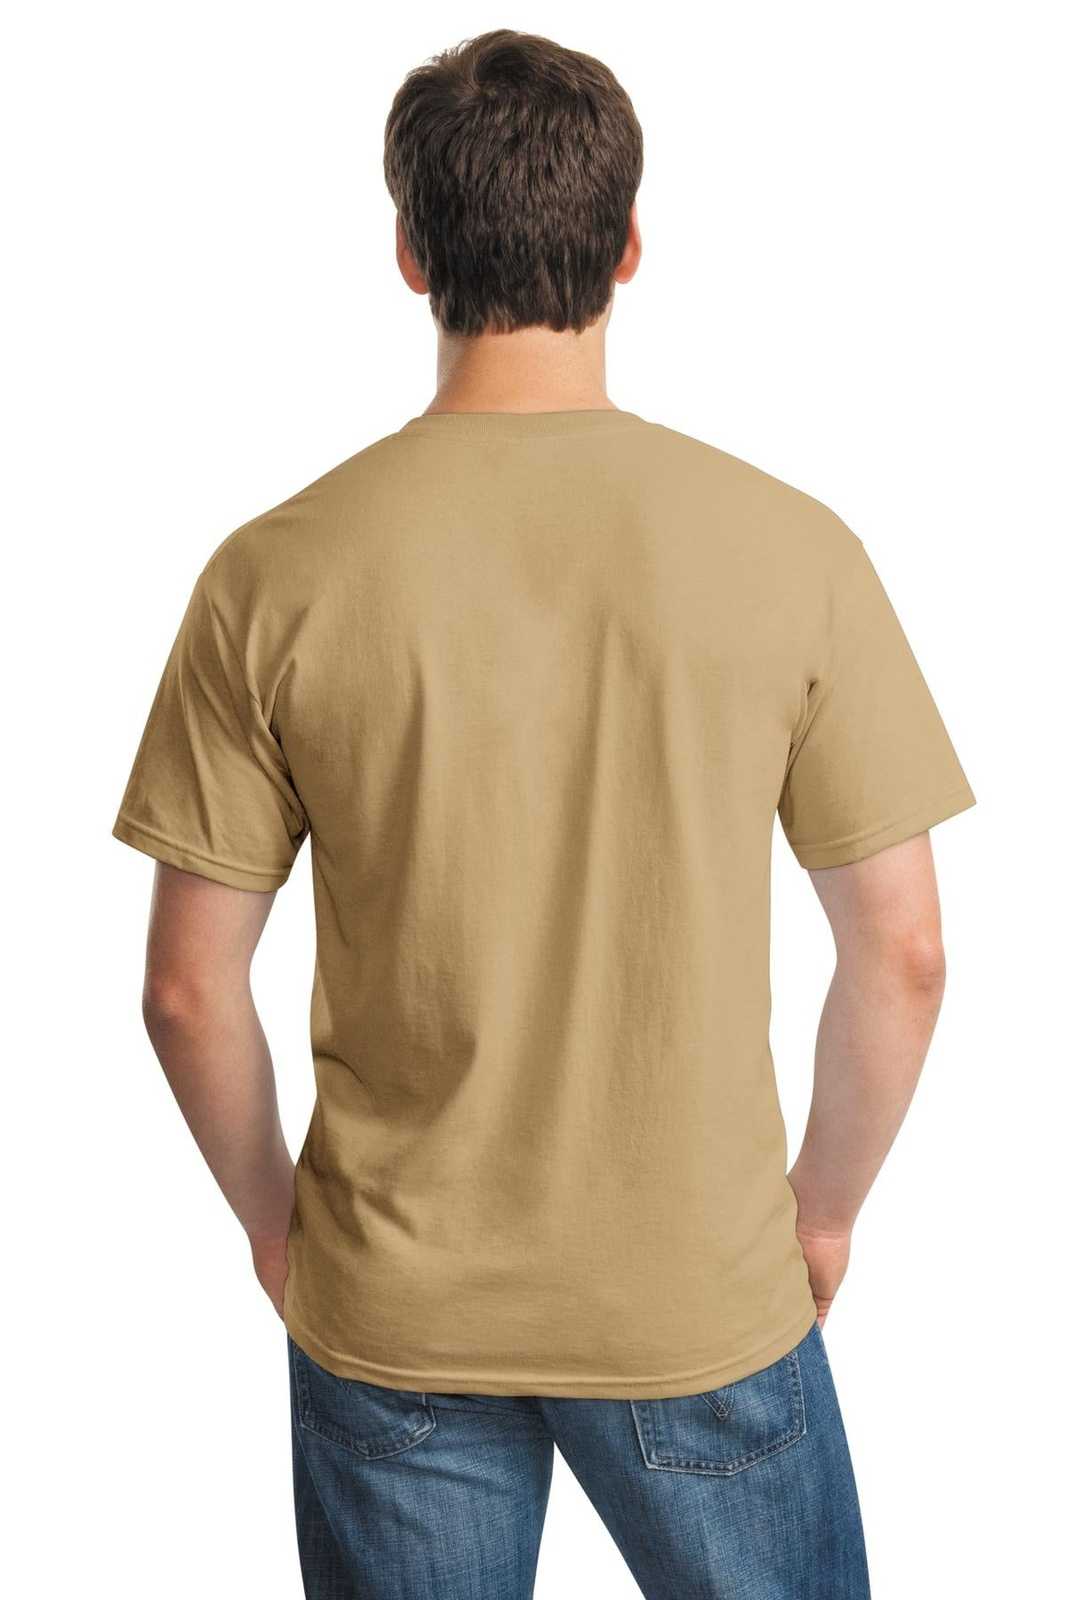 Gildan 5000 Heavy Cotton 100% Cotton T-Shirt - Old Gold - HIT a Double